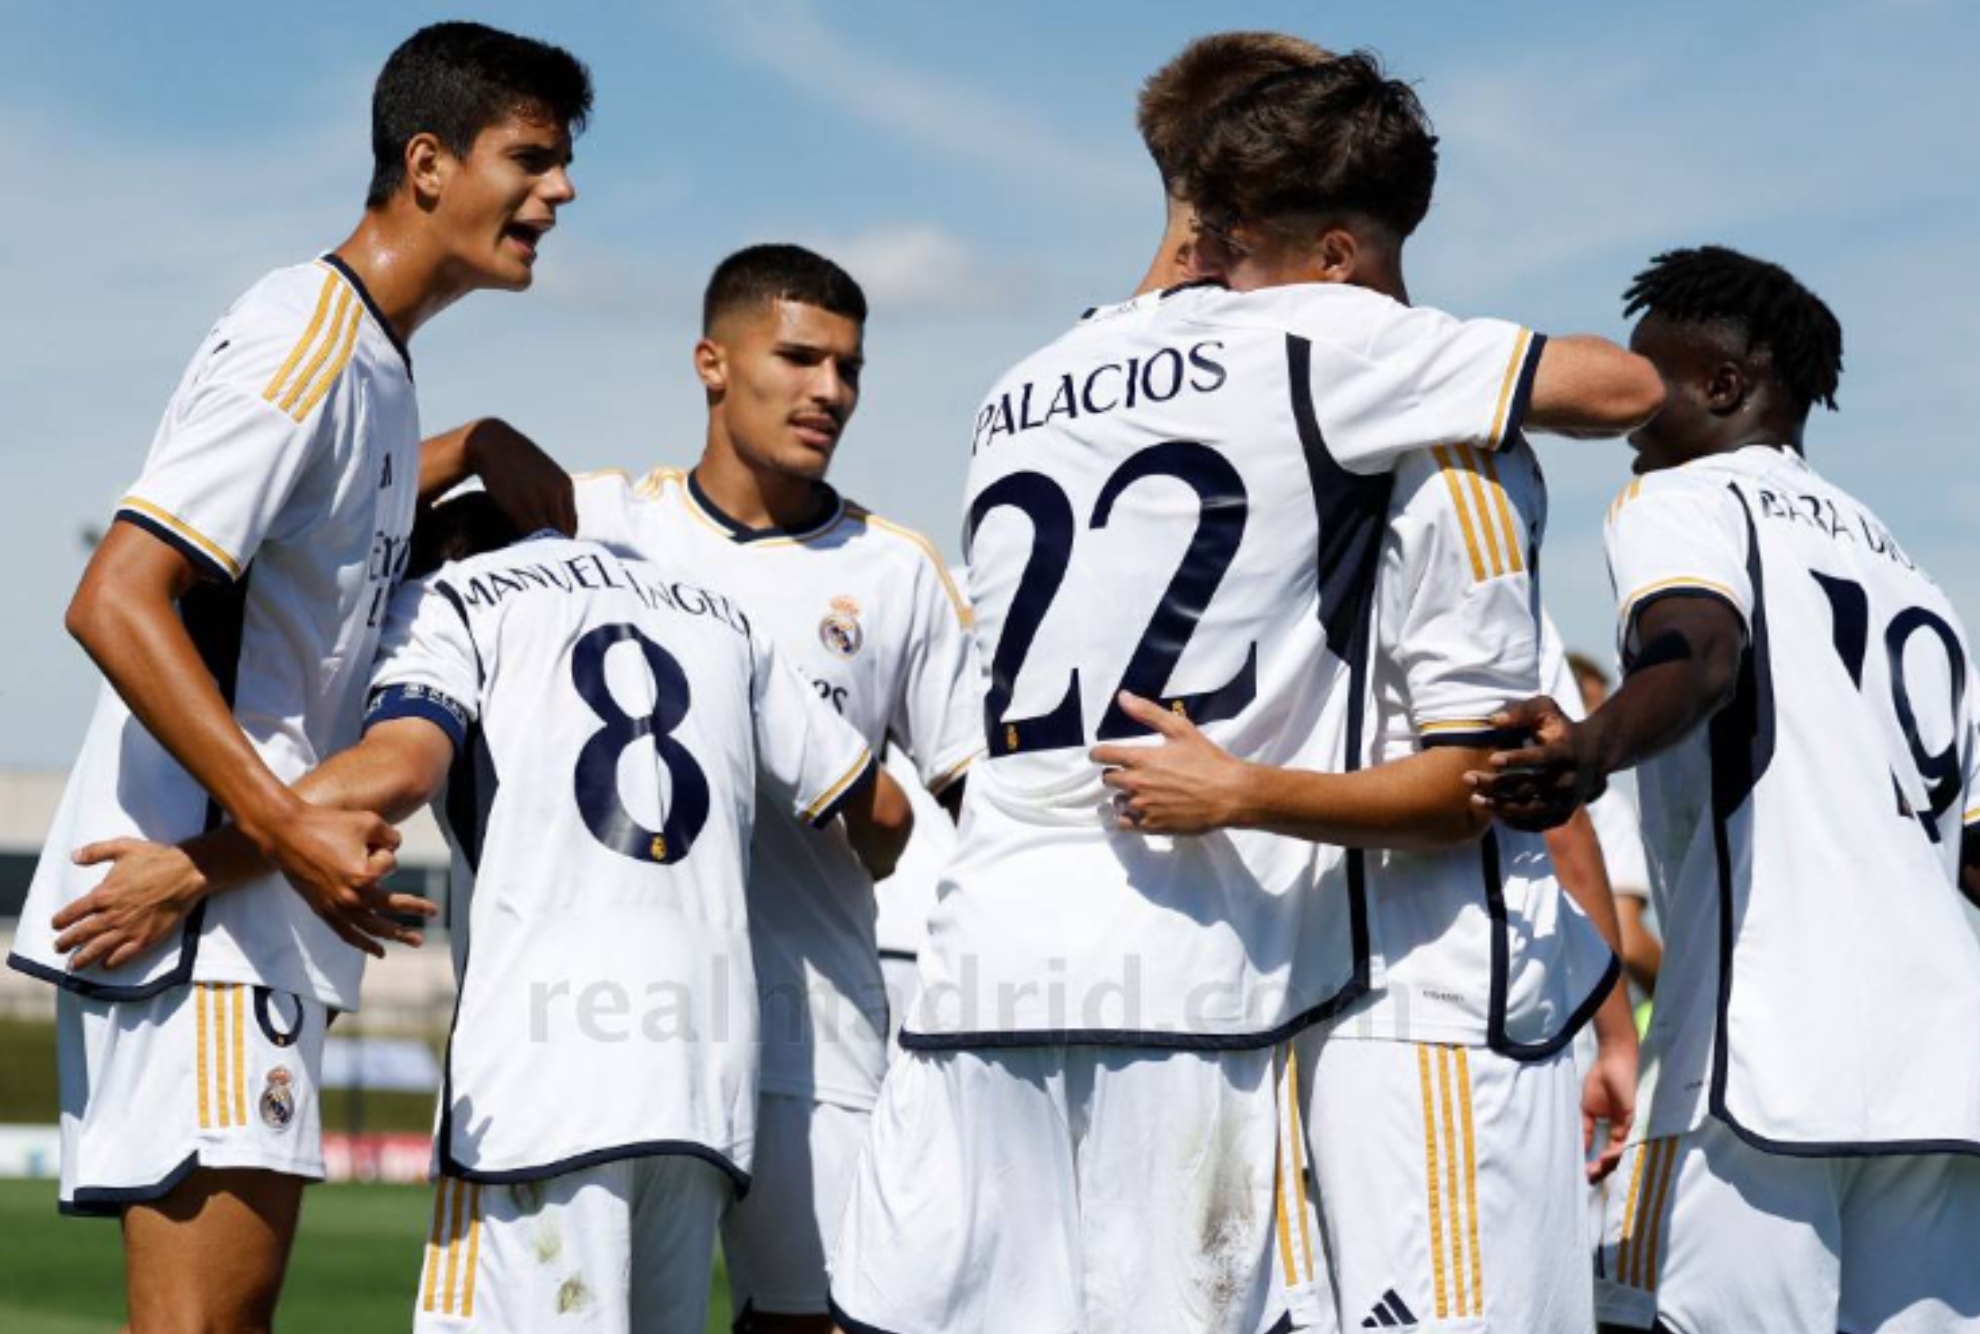 Chema, Manuel Ángel, Palacios, Baba, Yusi y De Llanos, celebrando un gol en la Youth.